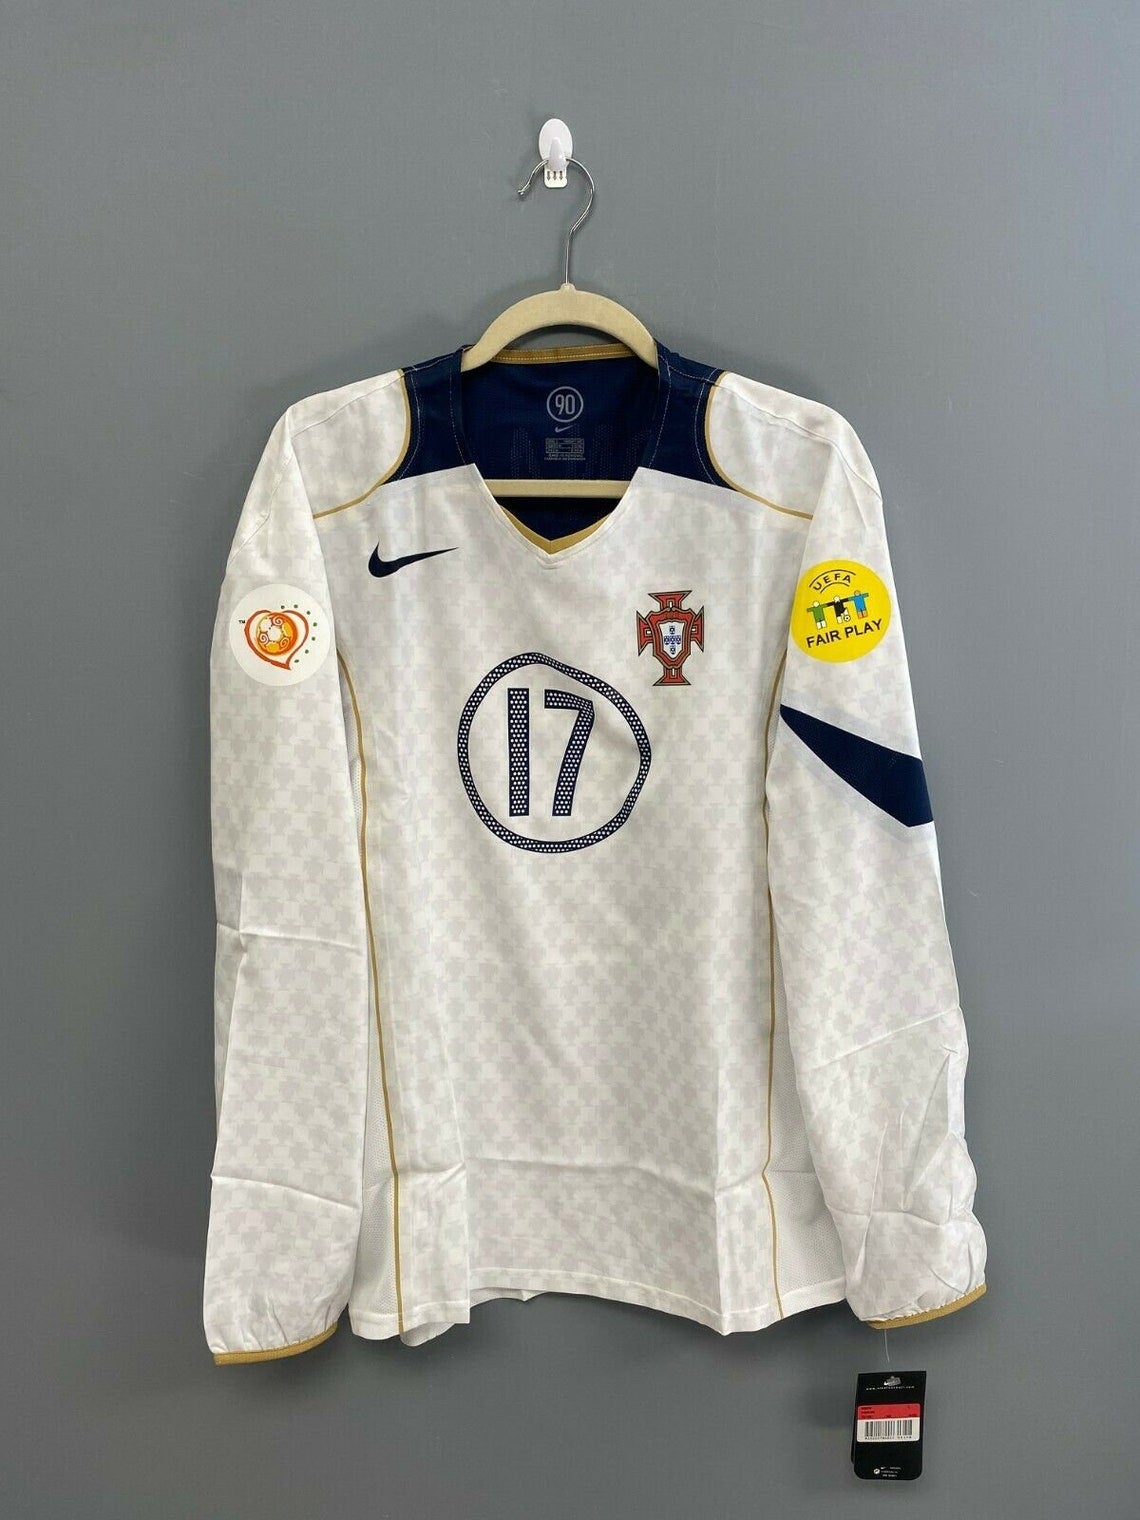 portugal euro 2004 kit